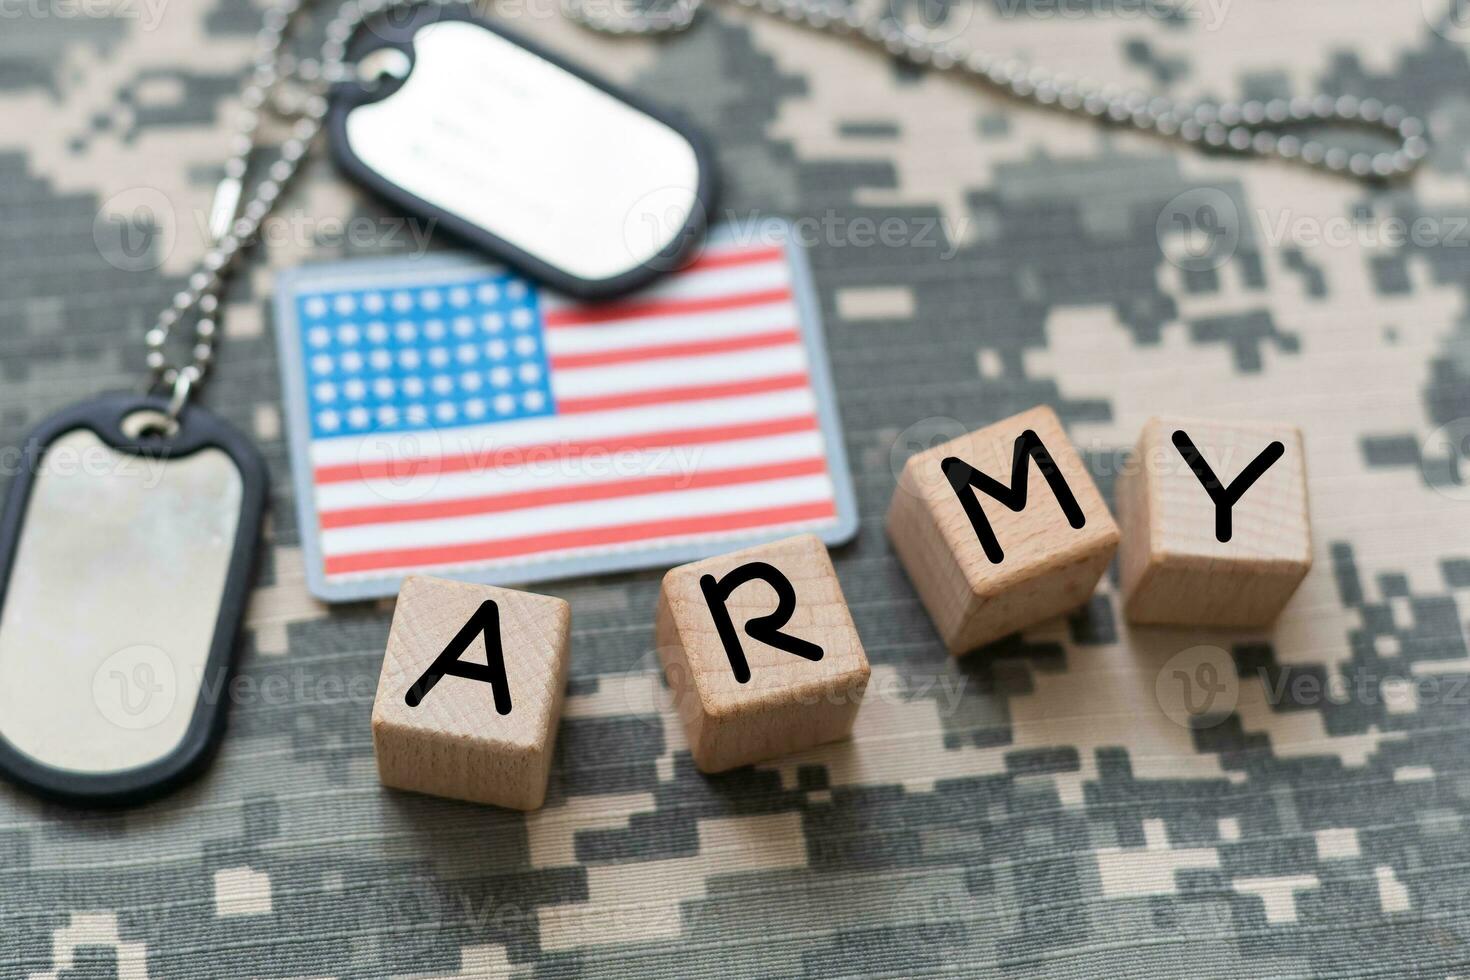 oss armén begrepp på kamouflage enhetlig foto